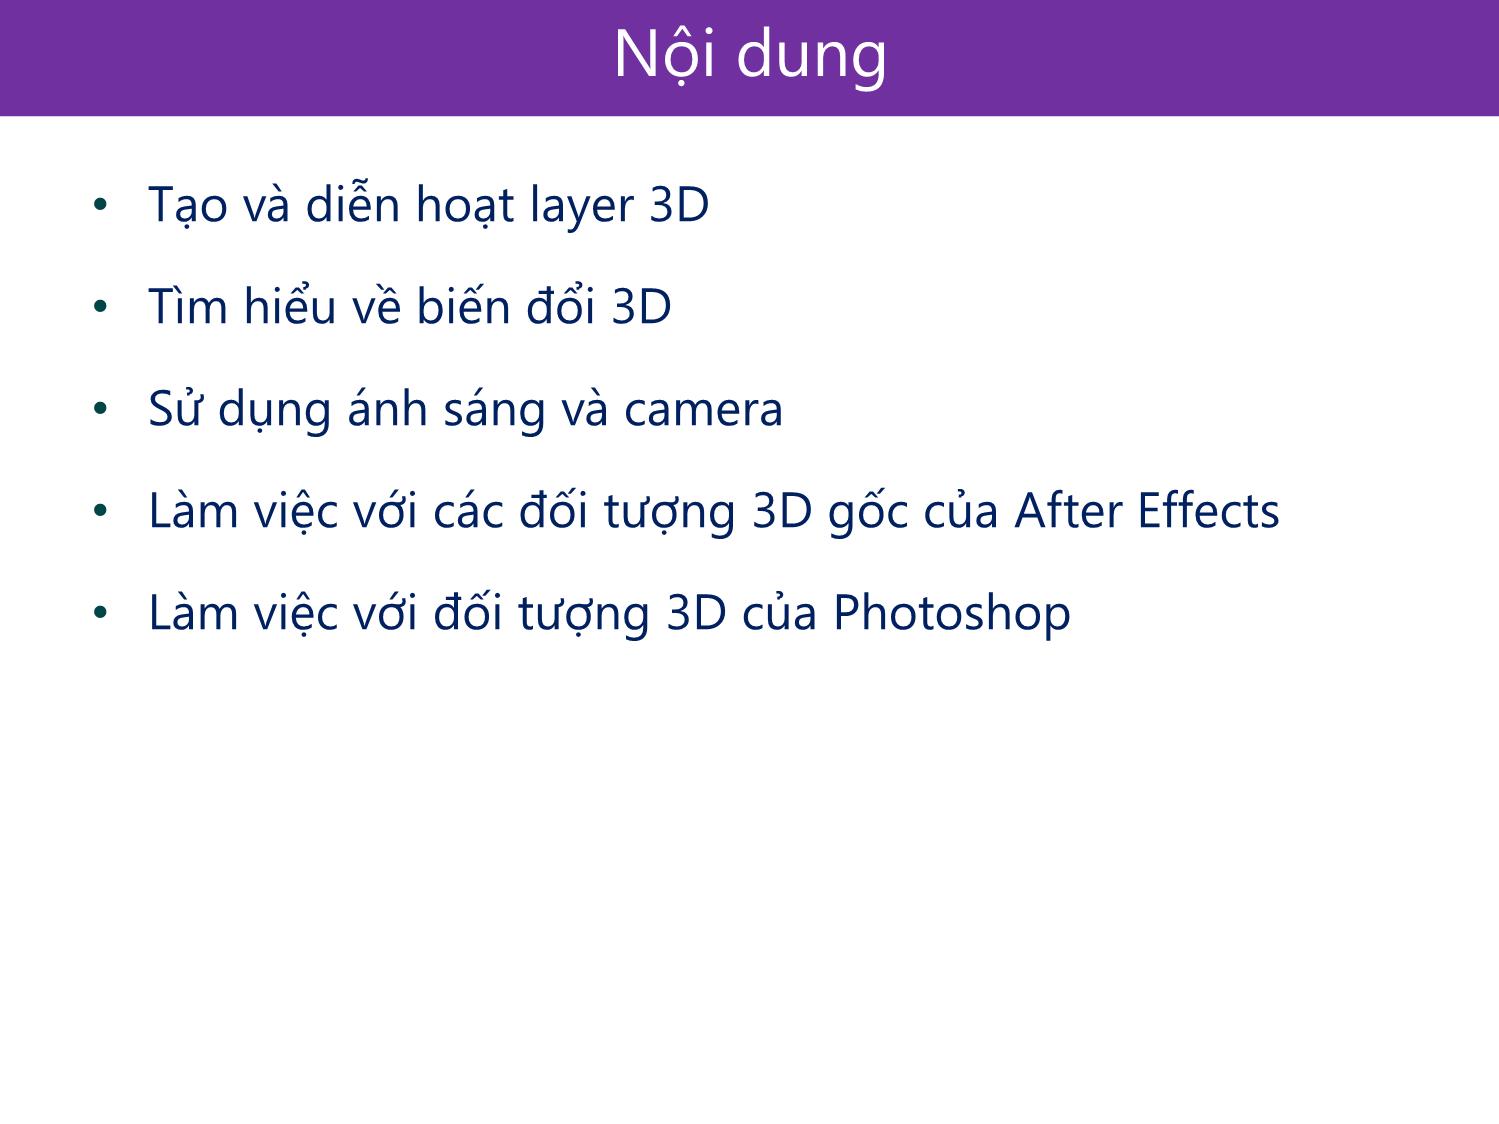 Bài giảng Xử lý kỹ xảo với After Effect Cs6 - Bài 6: Làm việc với đối tượng 3D trong After Effect trang 3